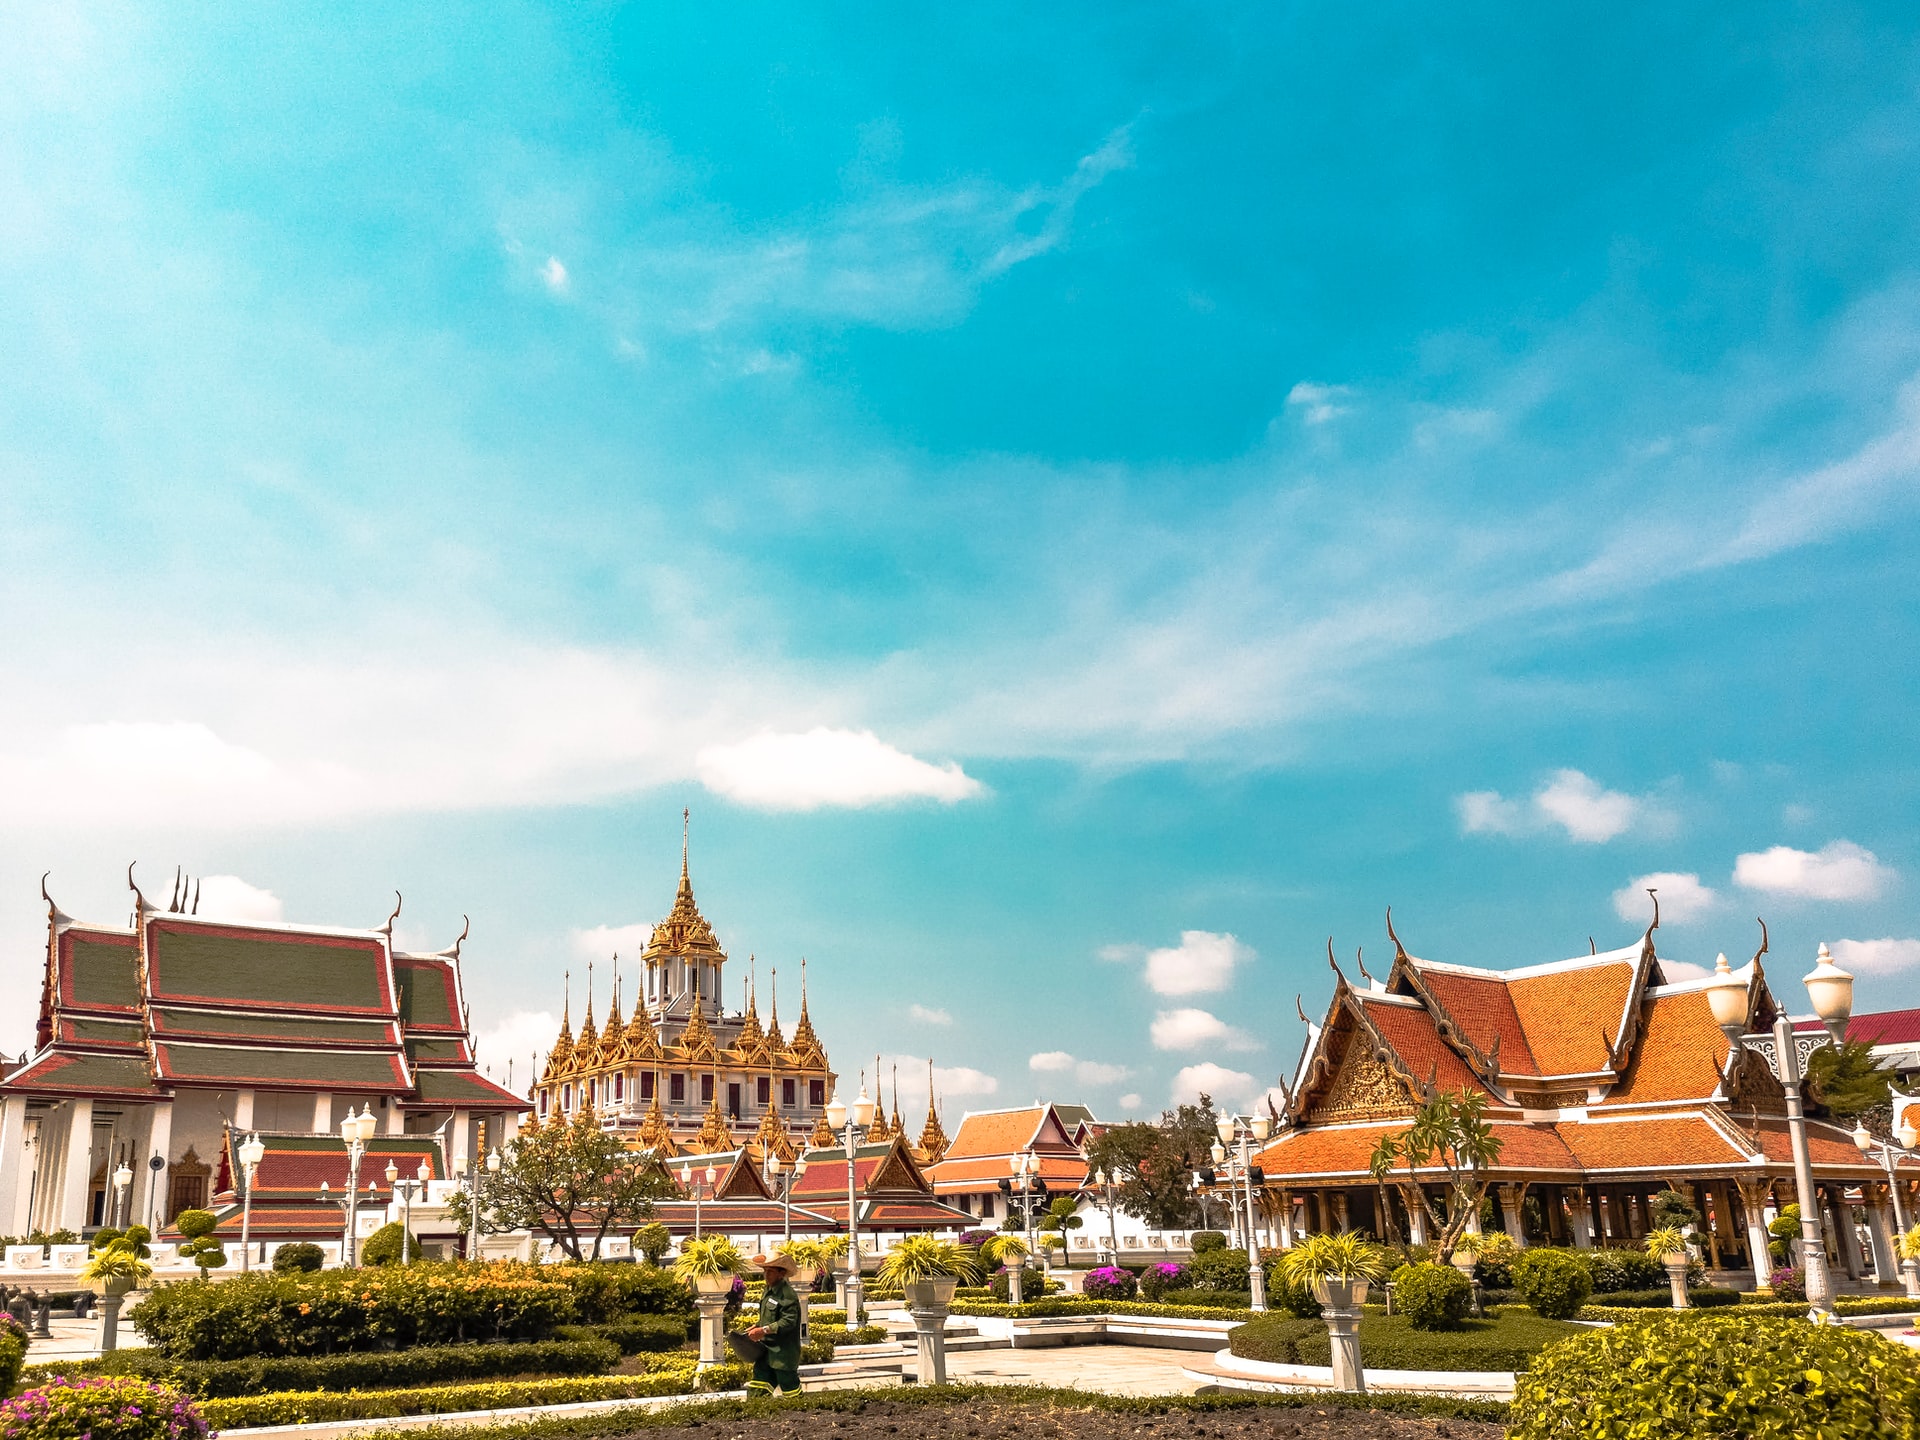 タイ国政府観光庁「今からタイへ」キャンペーン実施中